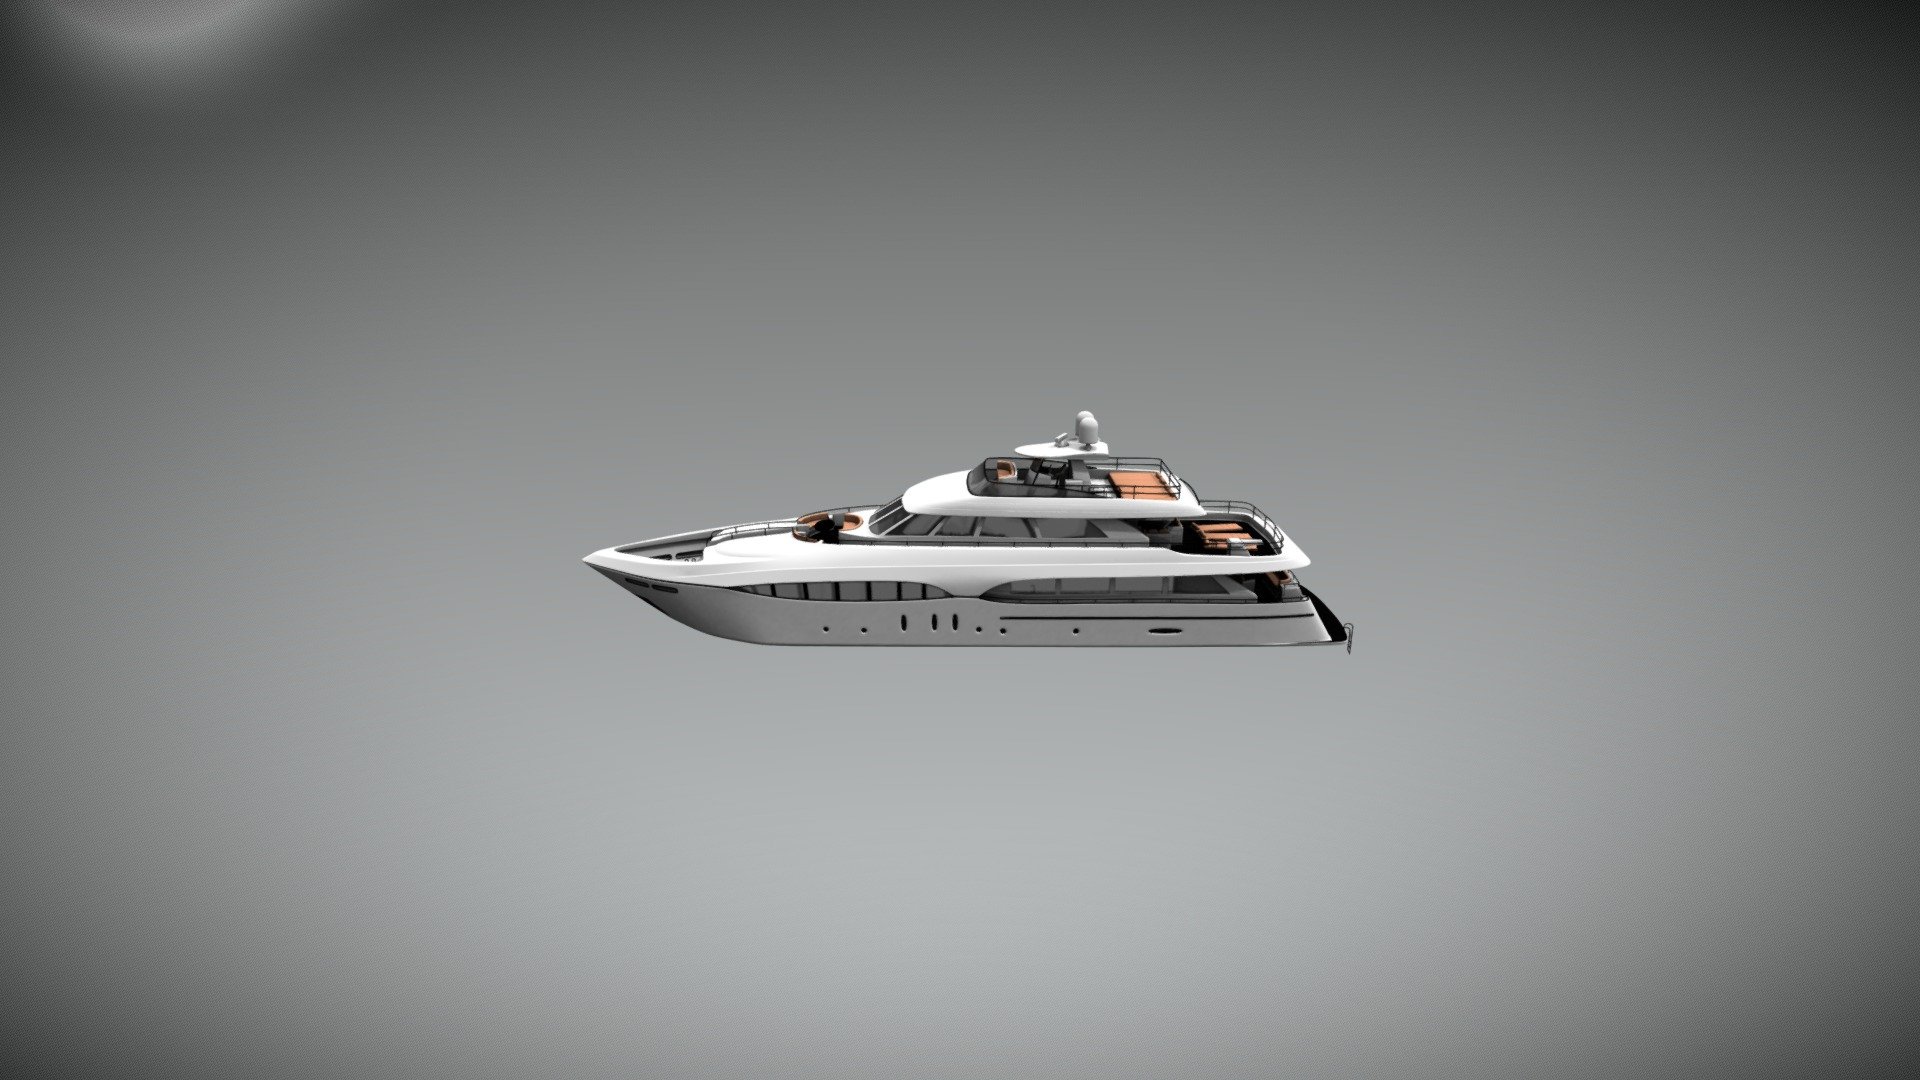 Yacht - 3D model by matteosponza 3d model